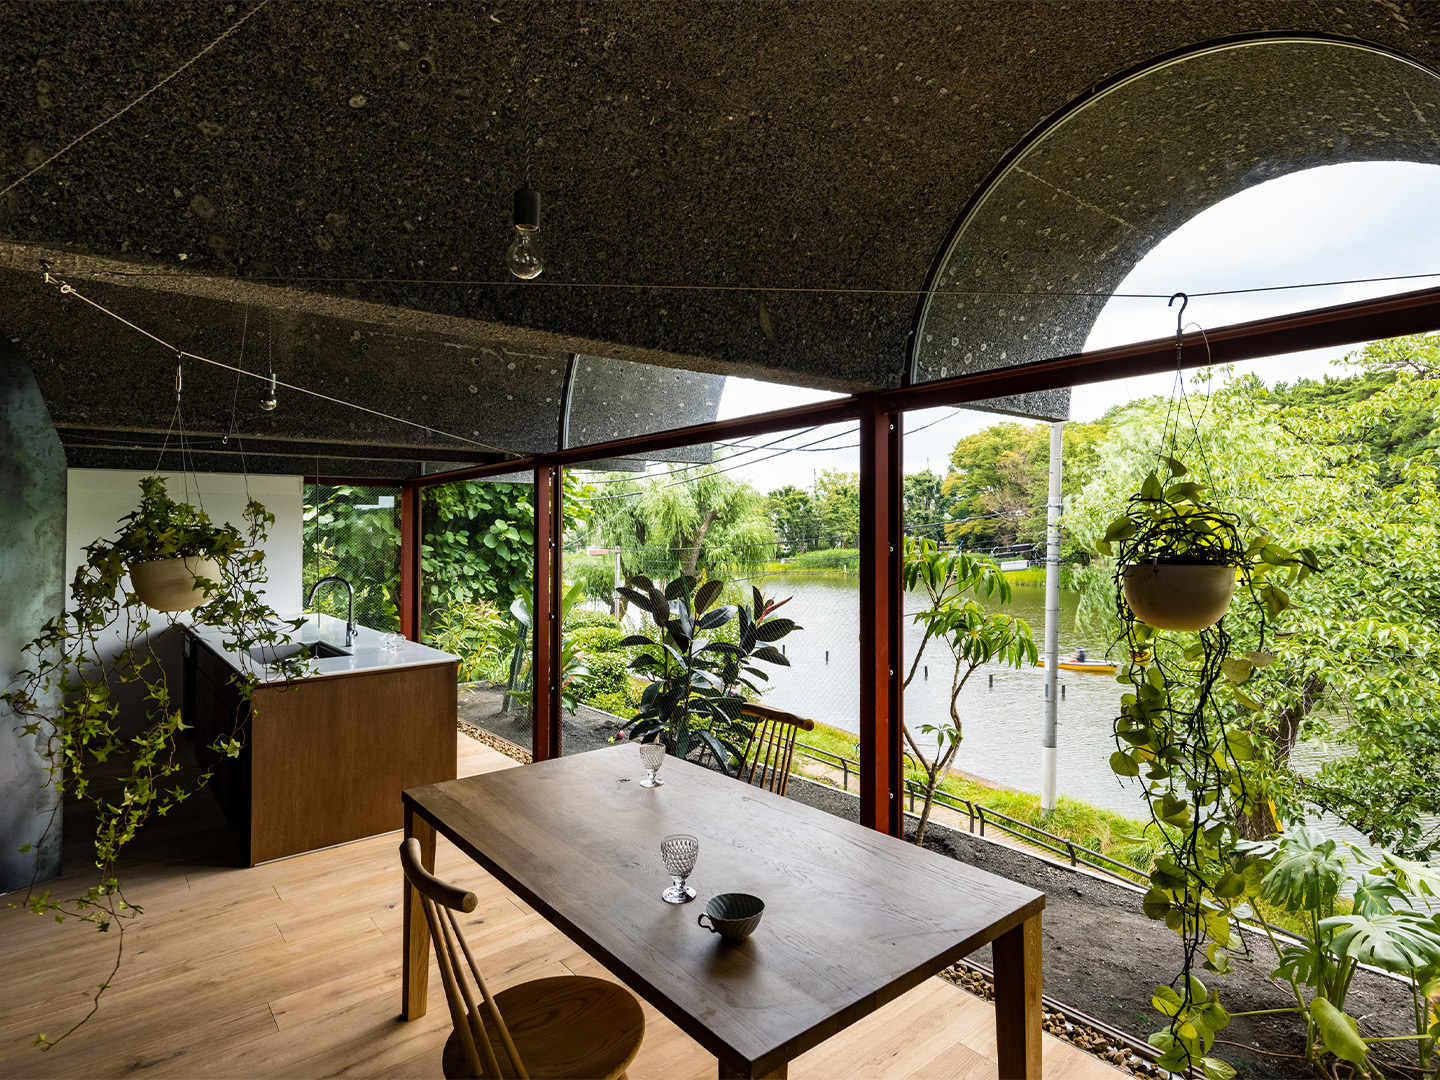 Tsuruoka House in Tokyo by Kiyoaki Takeda Architects